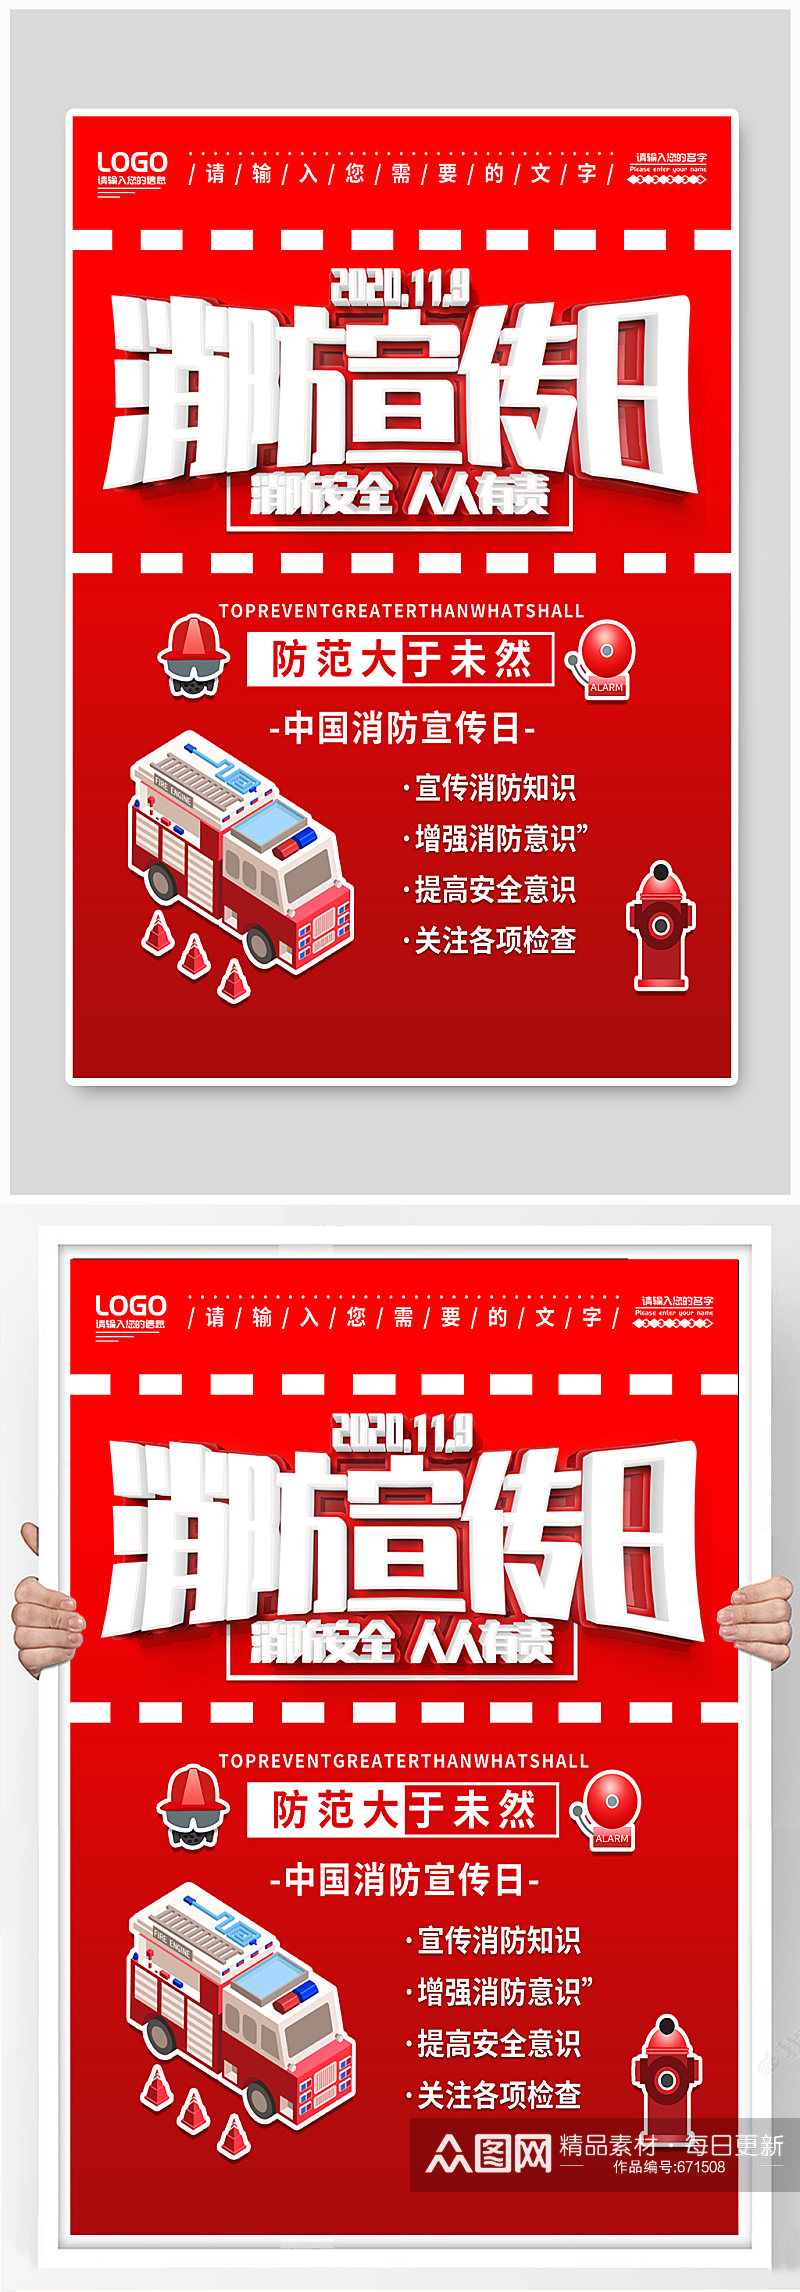 消防安全11月9日中国消防宣传日宣传海报素材